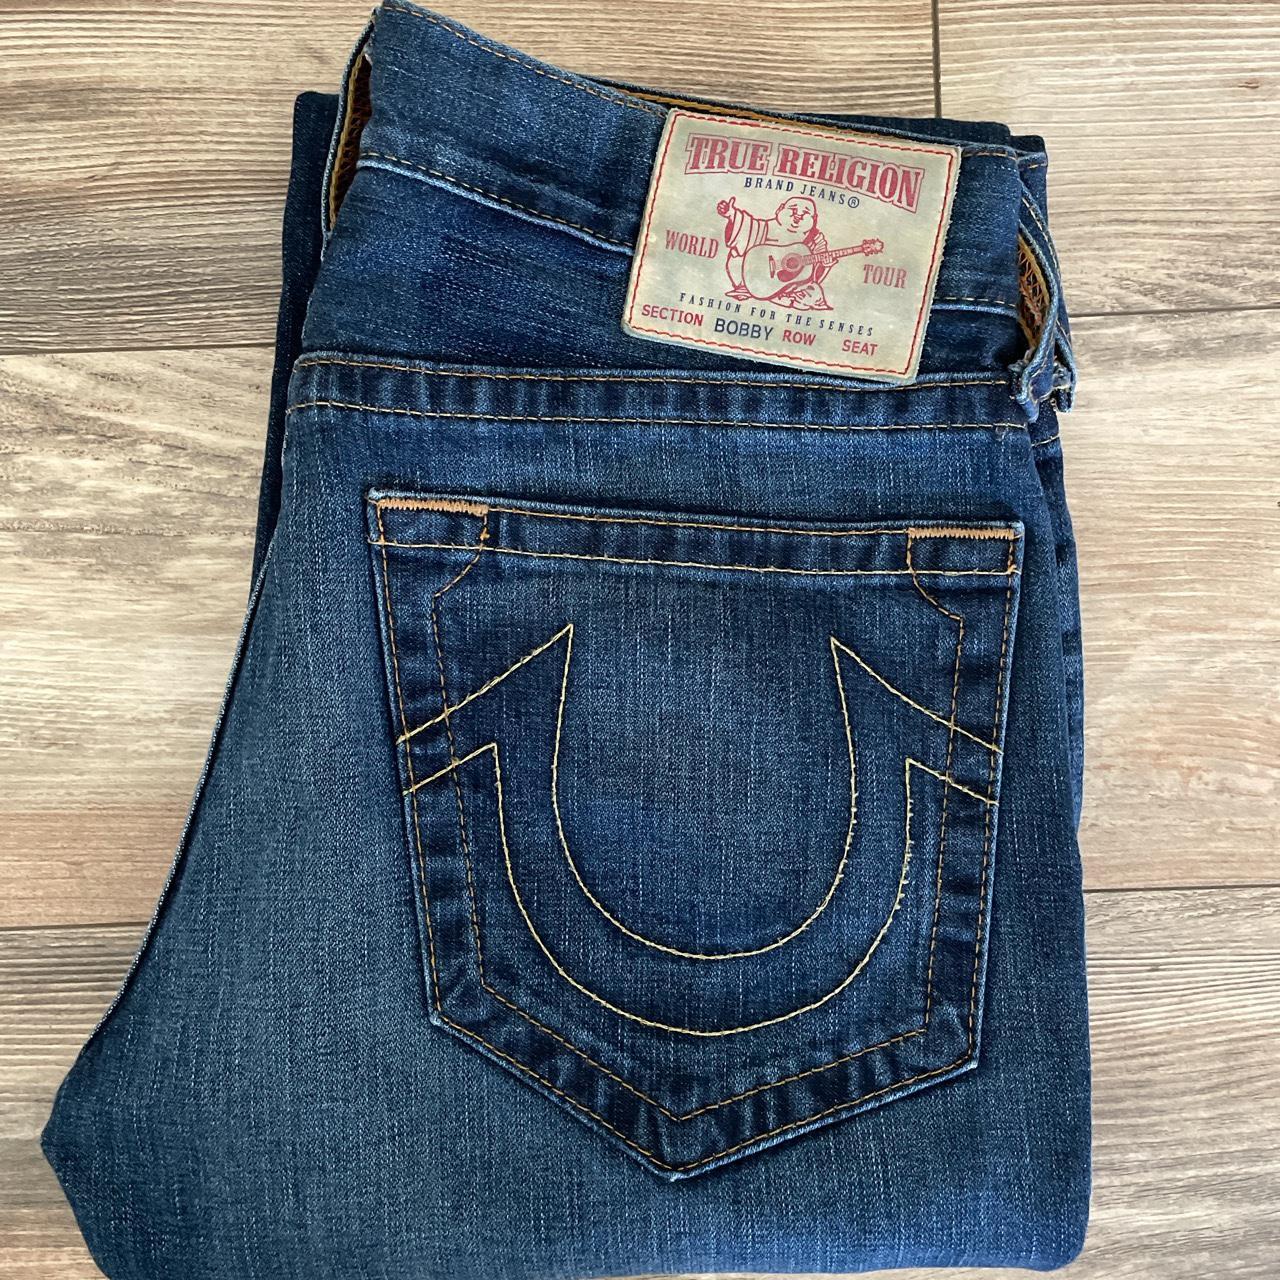 Vintage True Religion Jeans Size 33 Great Fade Open... - Depop